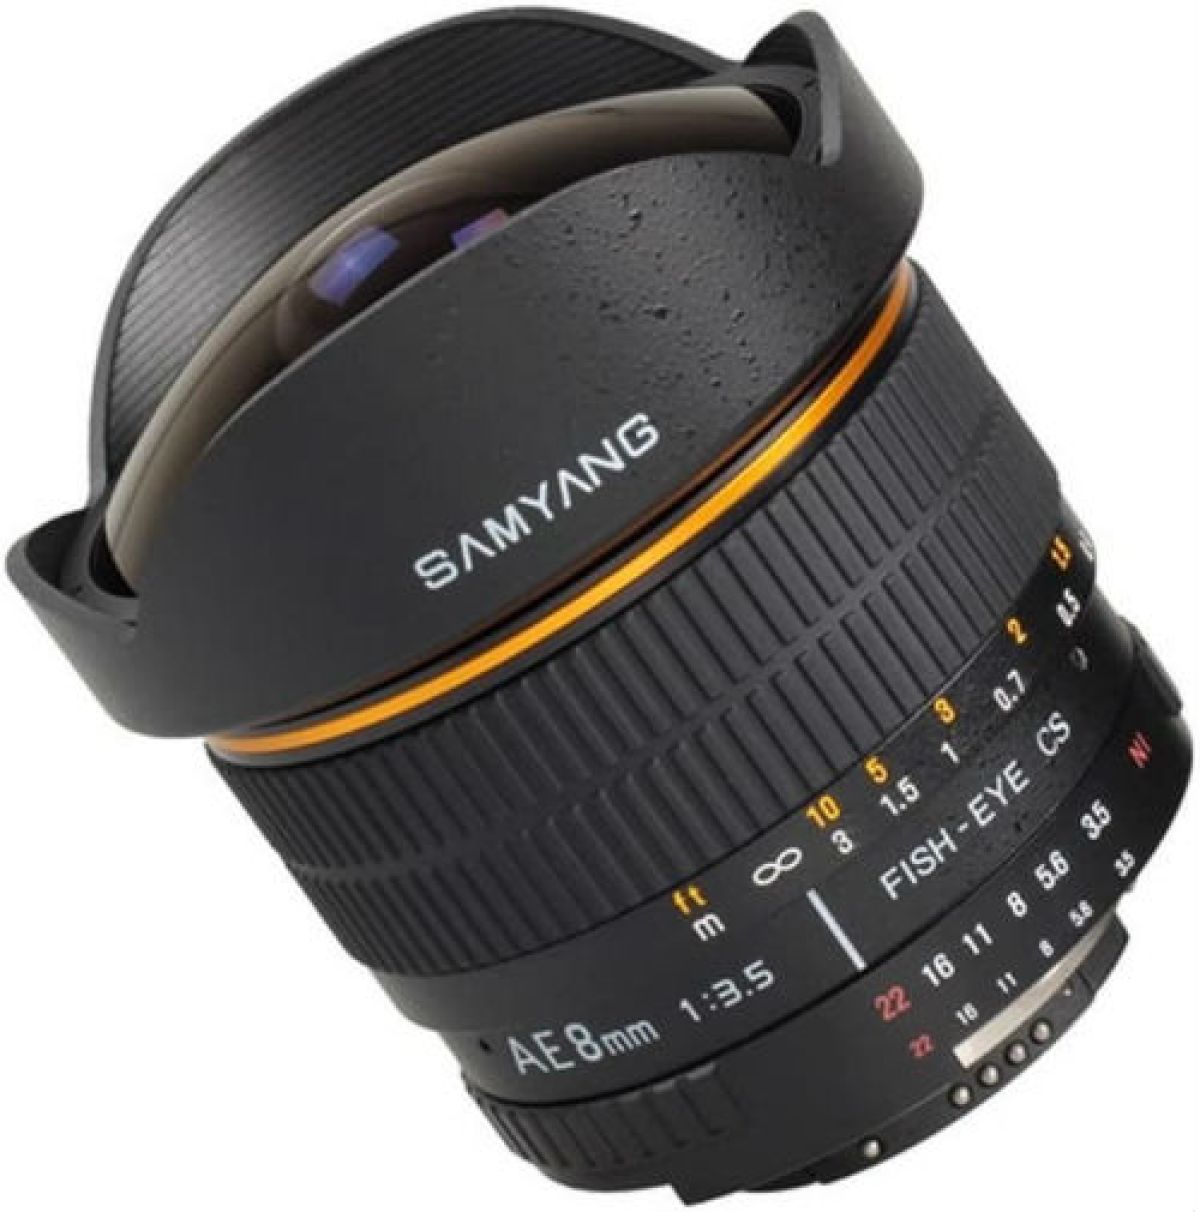 Samyang 8mm f/3.5 Fisheye pour Canon Reflex